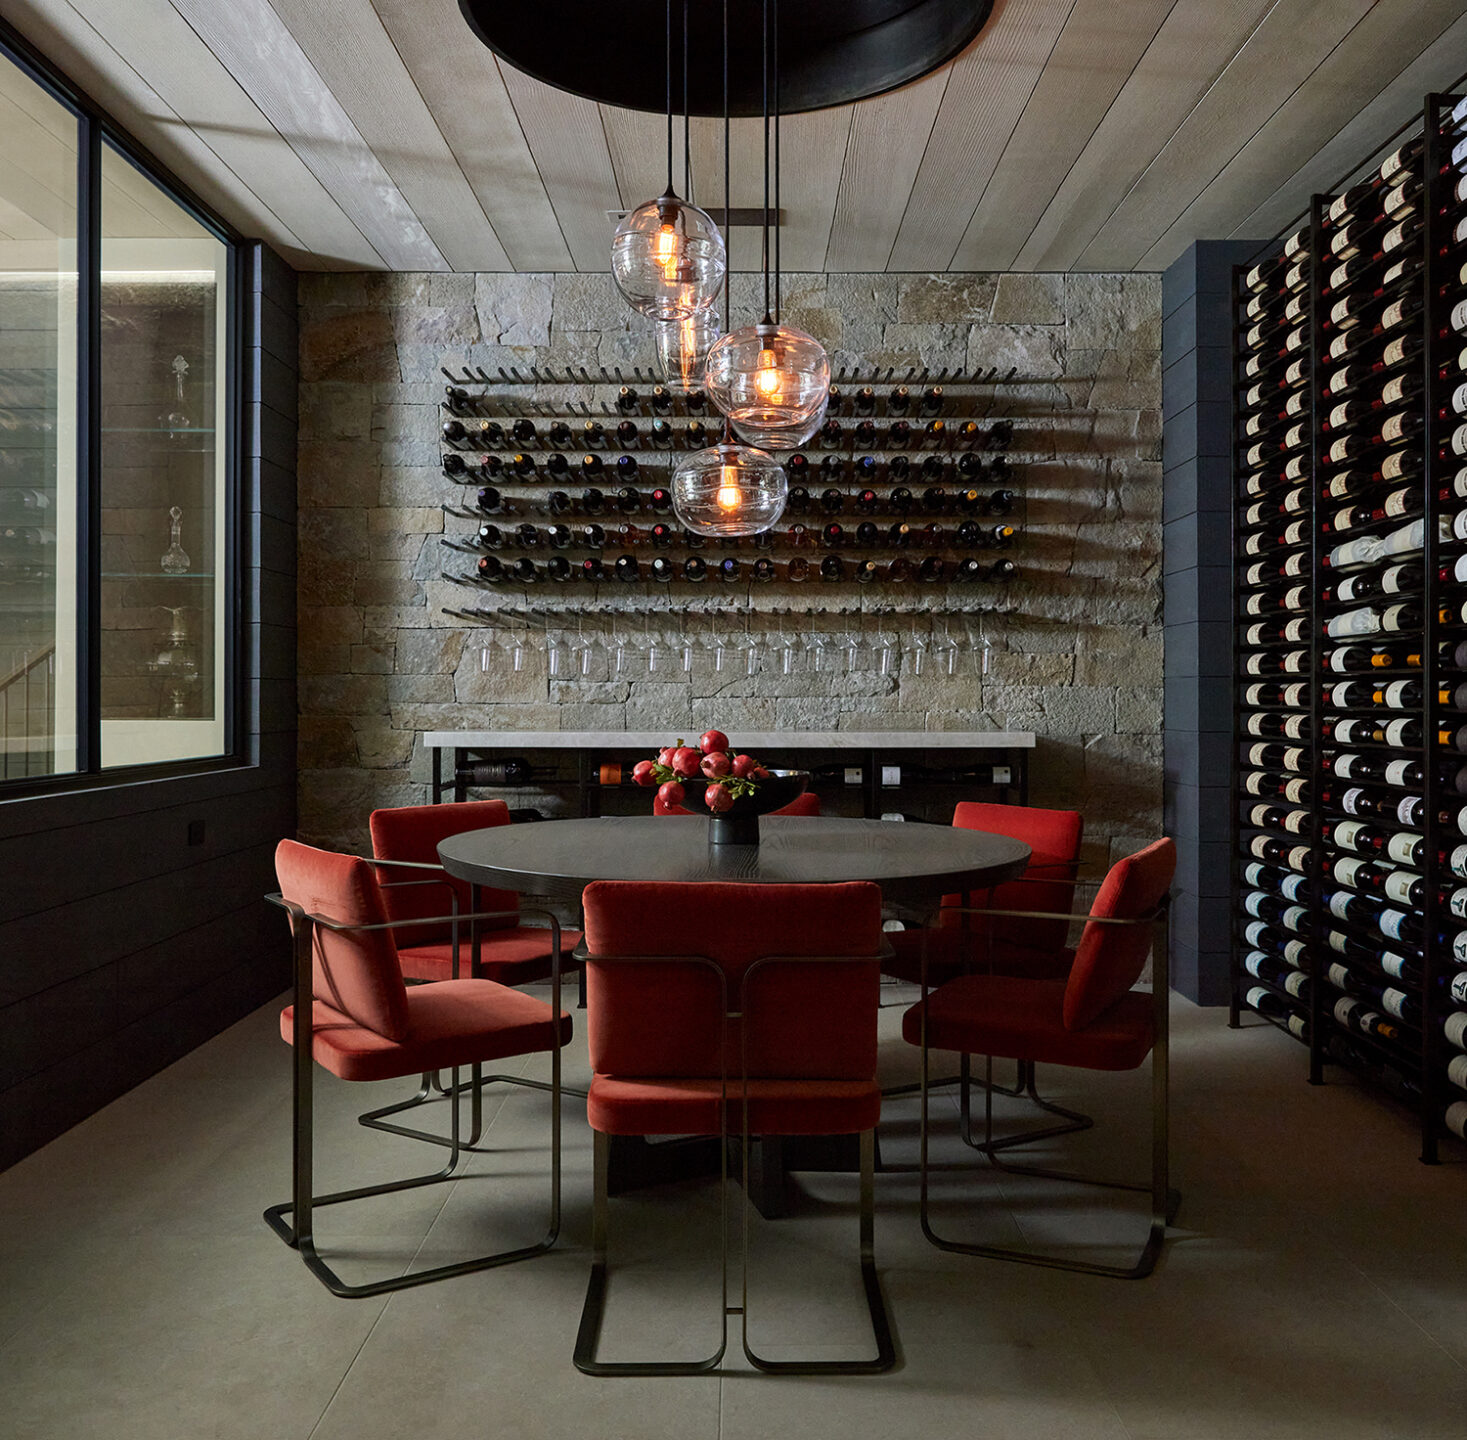 Jennifer-Robin-Interiors-Project-Woodside-15-Wine-Cellar-Tasting-Room